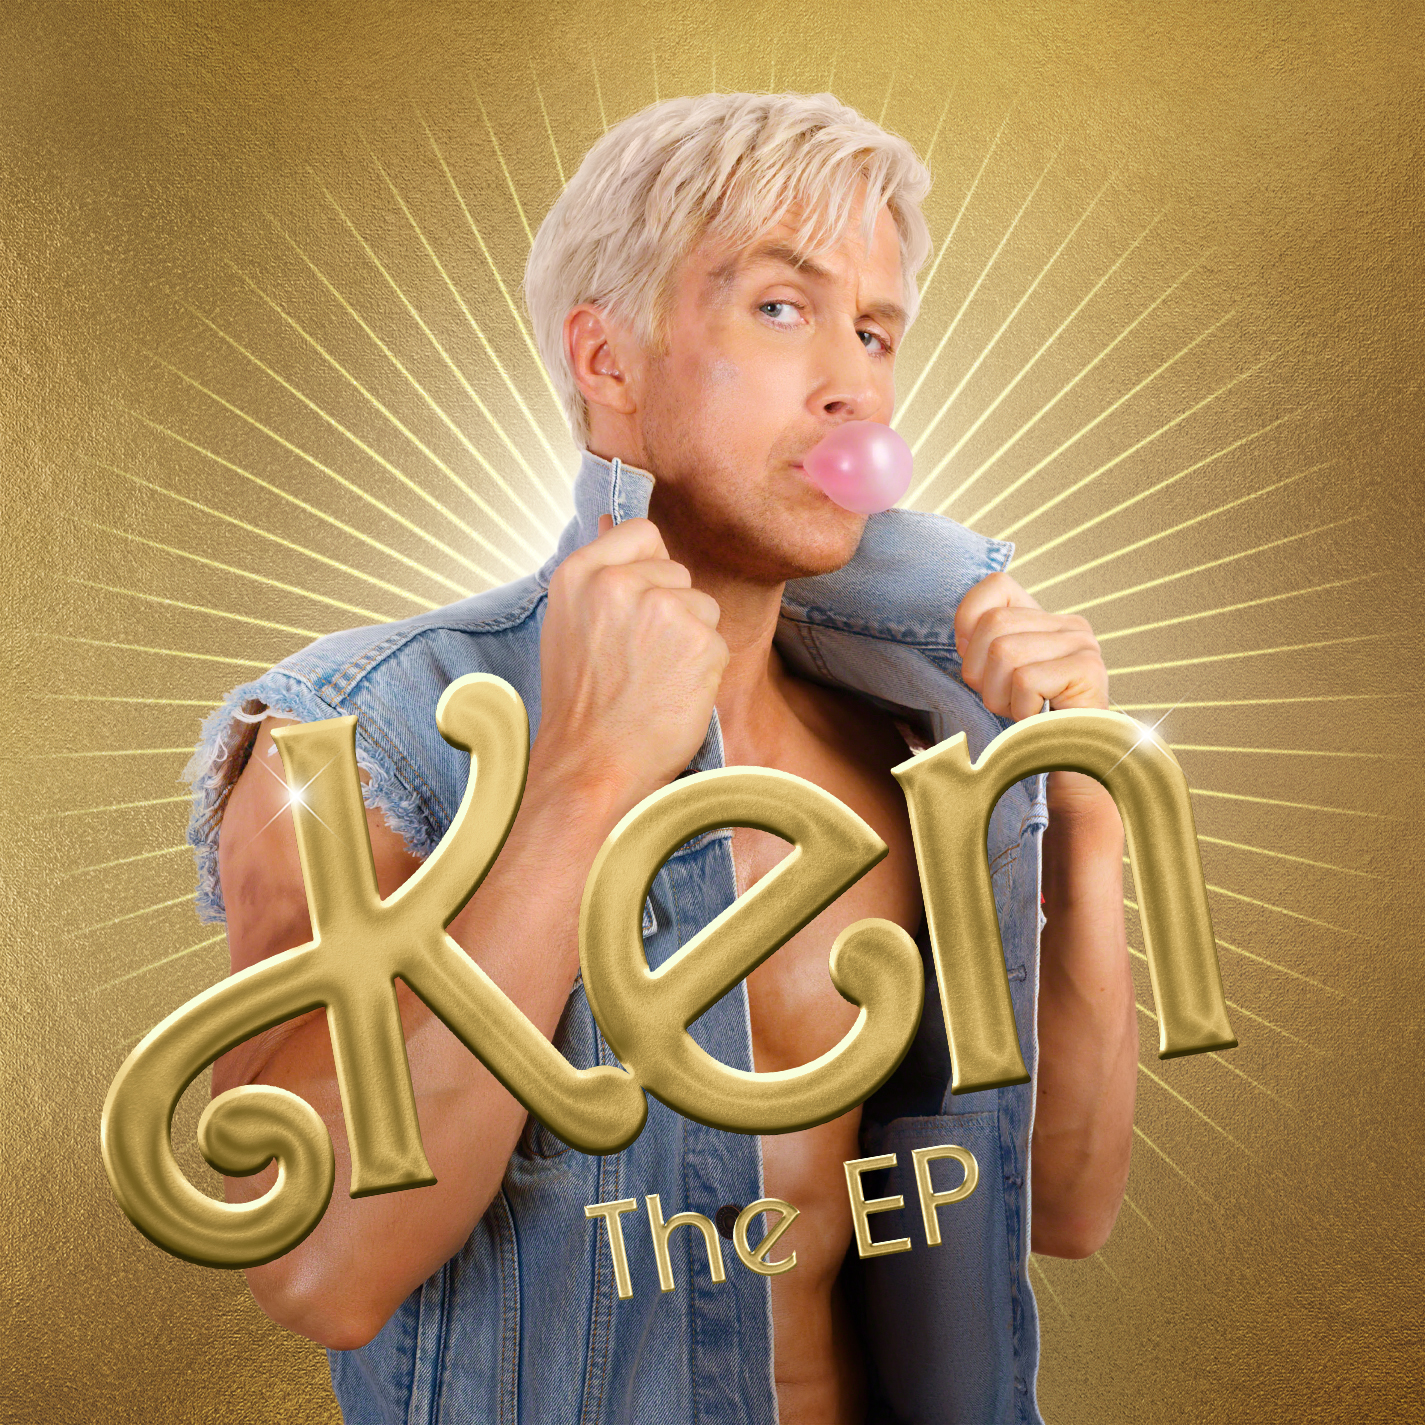 Ryan Gosling lanza "Ken the EP"